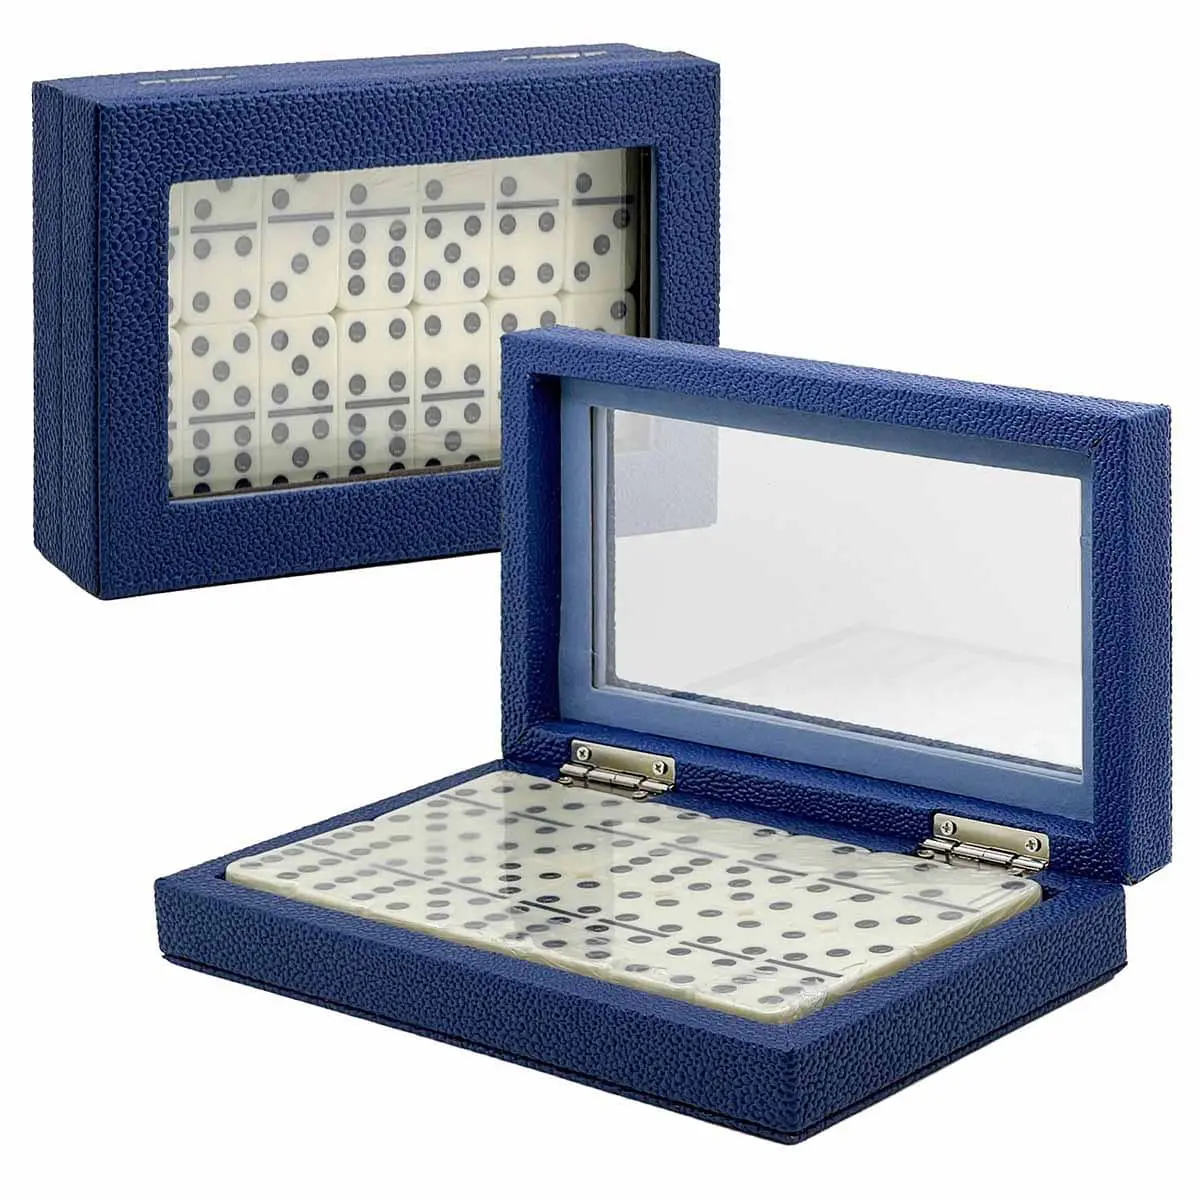 Juego de dominó clásico Colección de cajas de cuero sintético guijarro